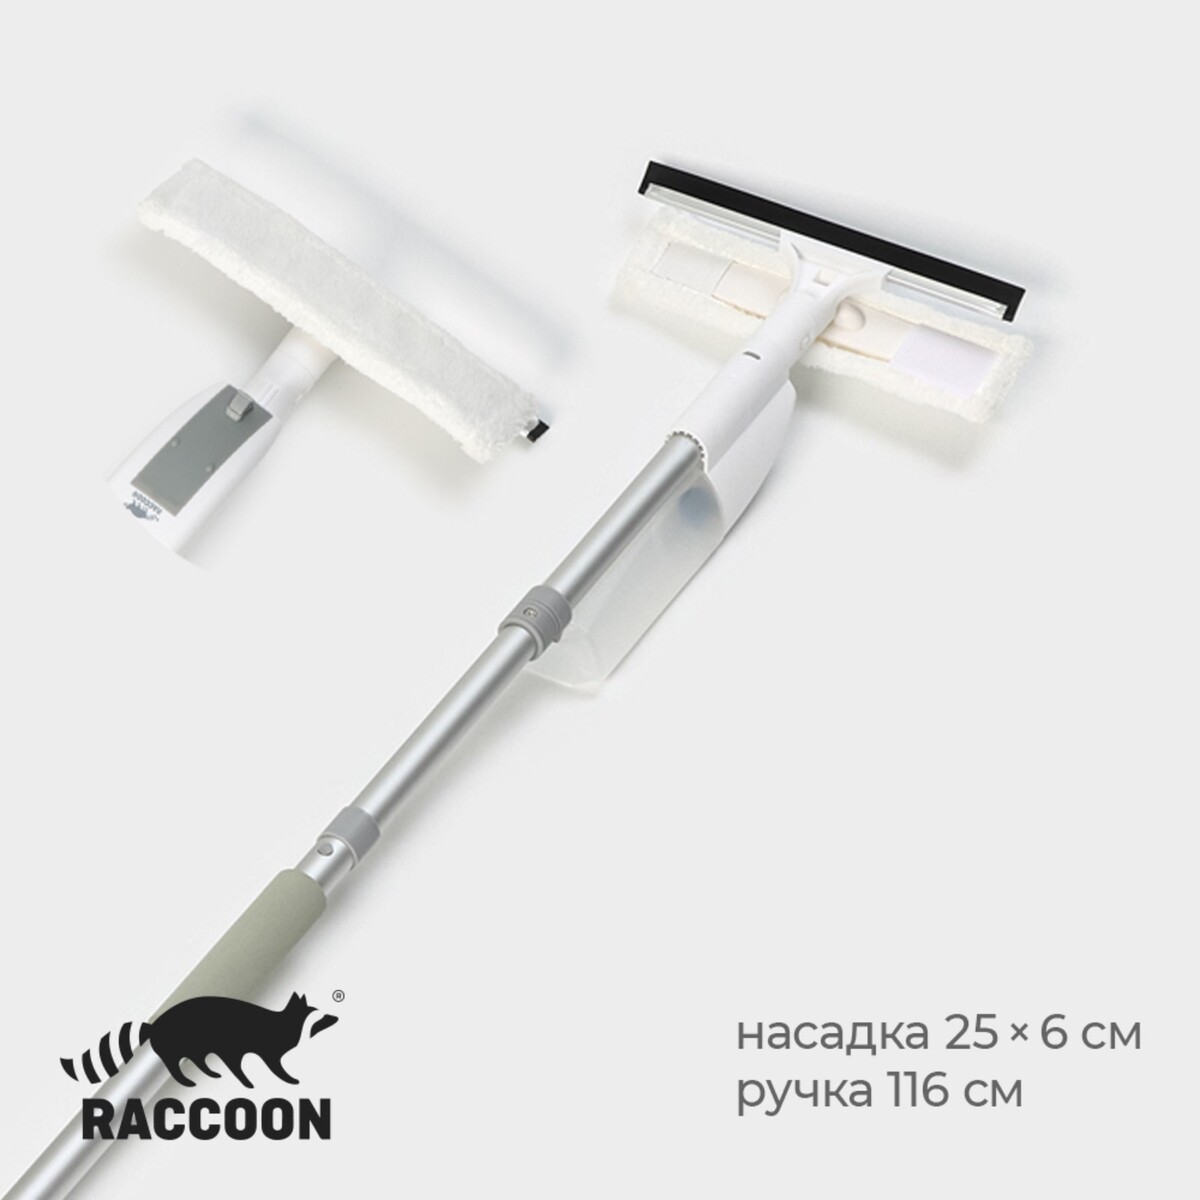 Оконная швабра с распылителем raccoon, алюминиевая ручка, длина 116 см, сгон 25 см, насадка 25×6 см boomjoy швабра полотер с распылителем spray mop